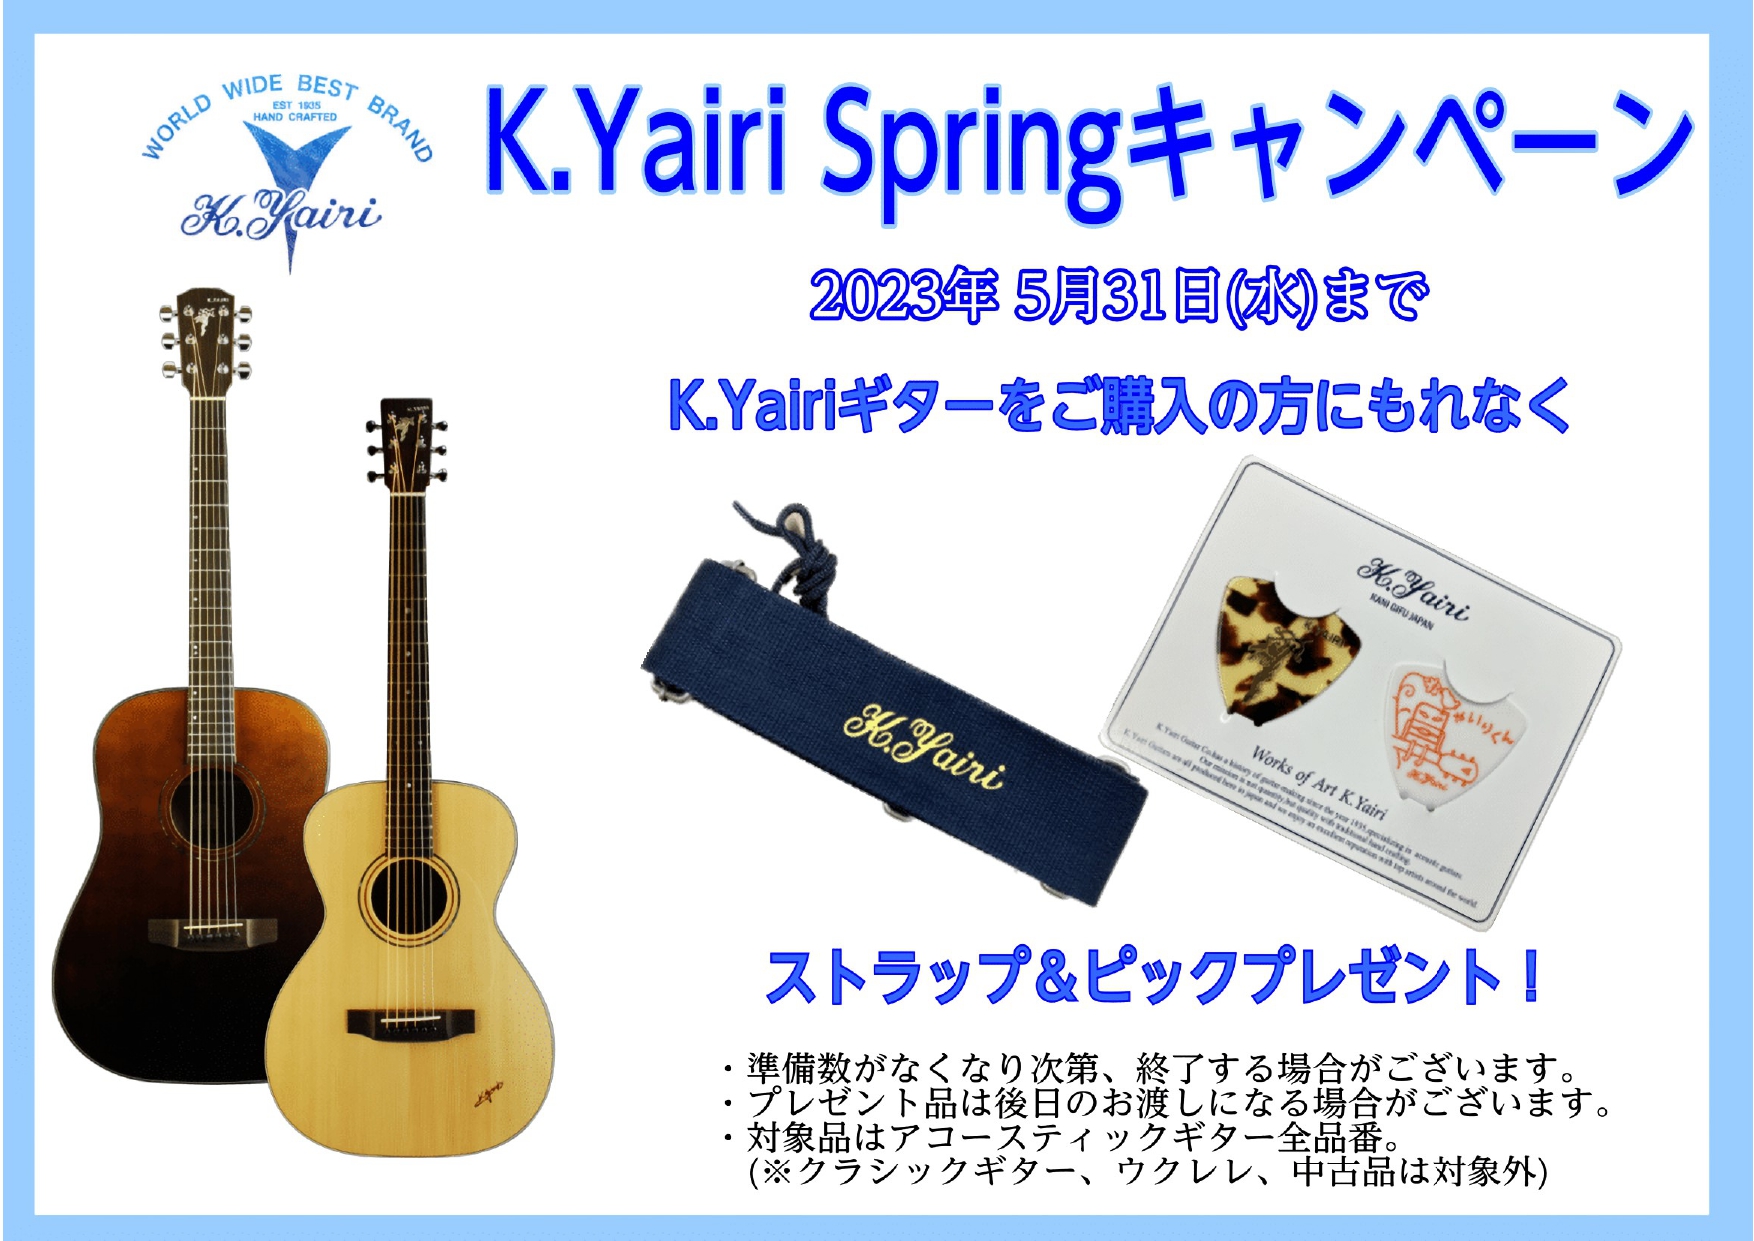 アコースティックギター】「K.Yairi Springキャンペーン」実施中